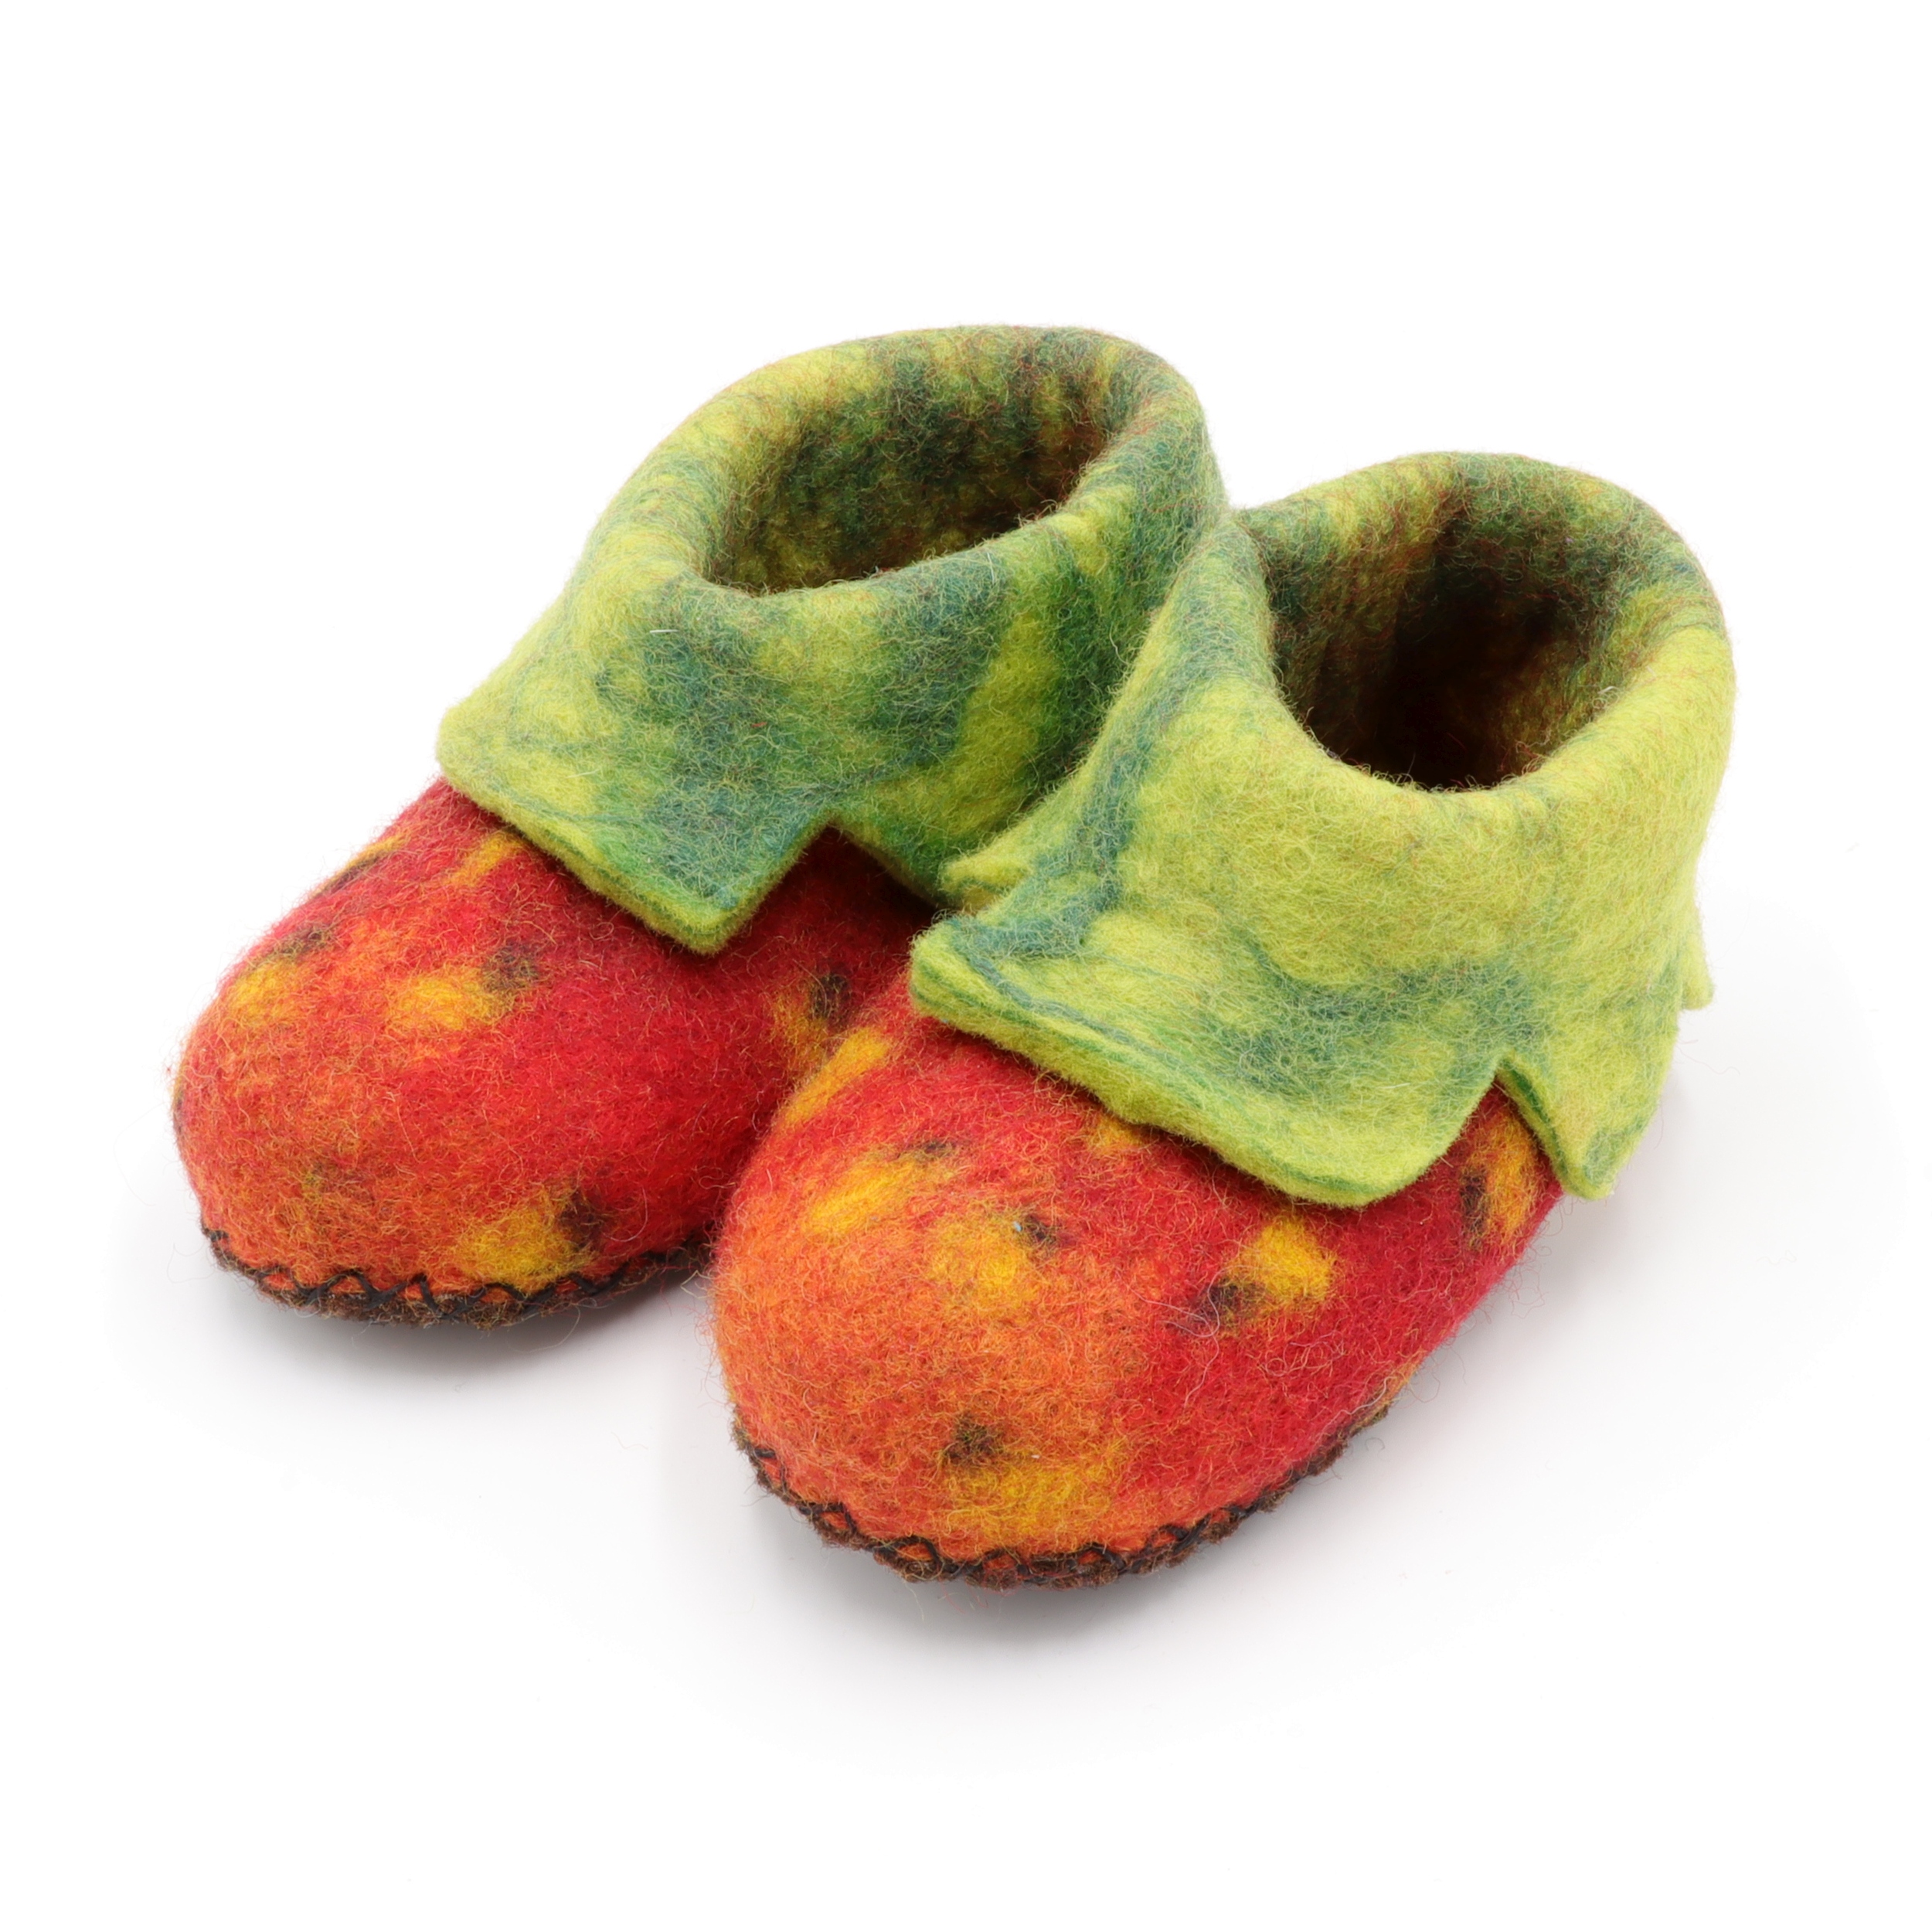 Schuhe aus Filz für Kinder - Die Rote Erdbeere - rutschfeste Sohle aus Teppichstoff